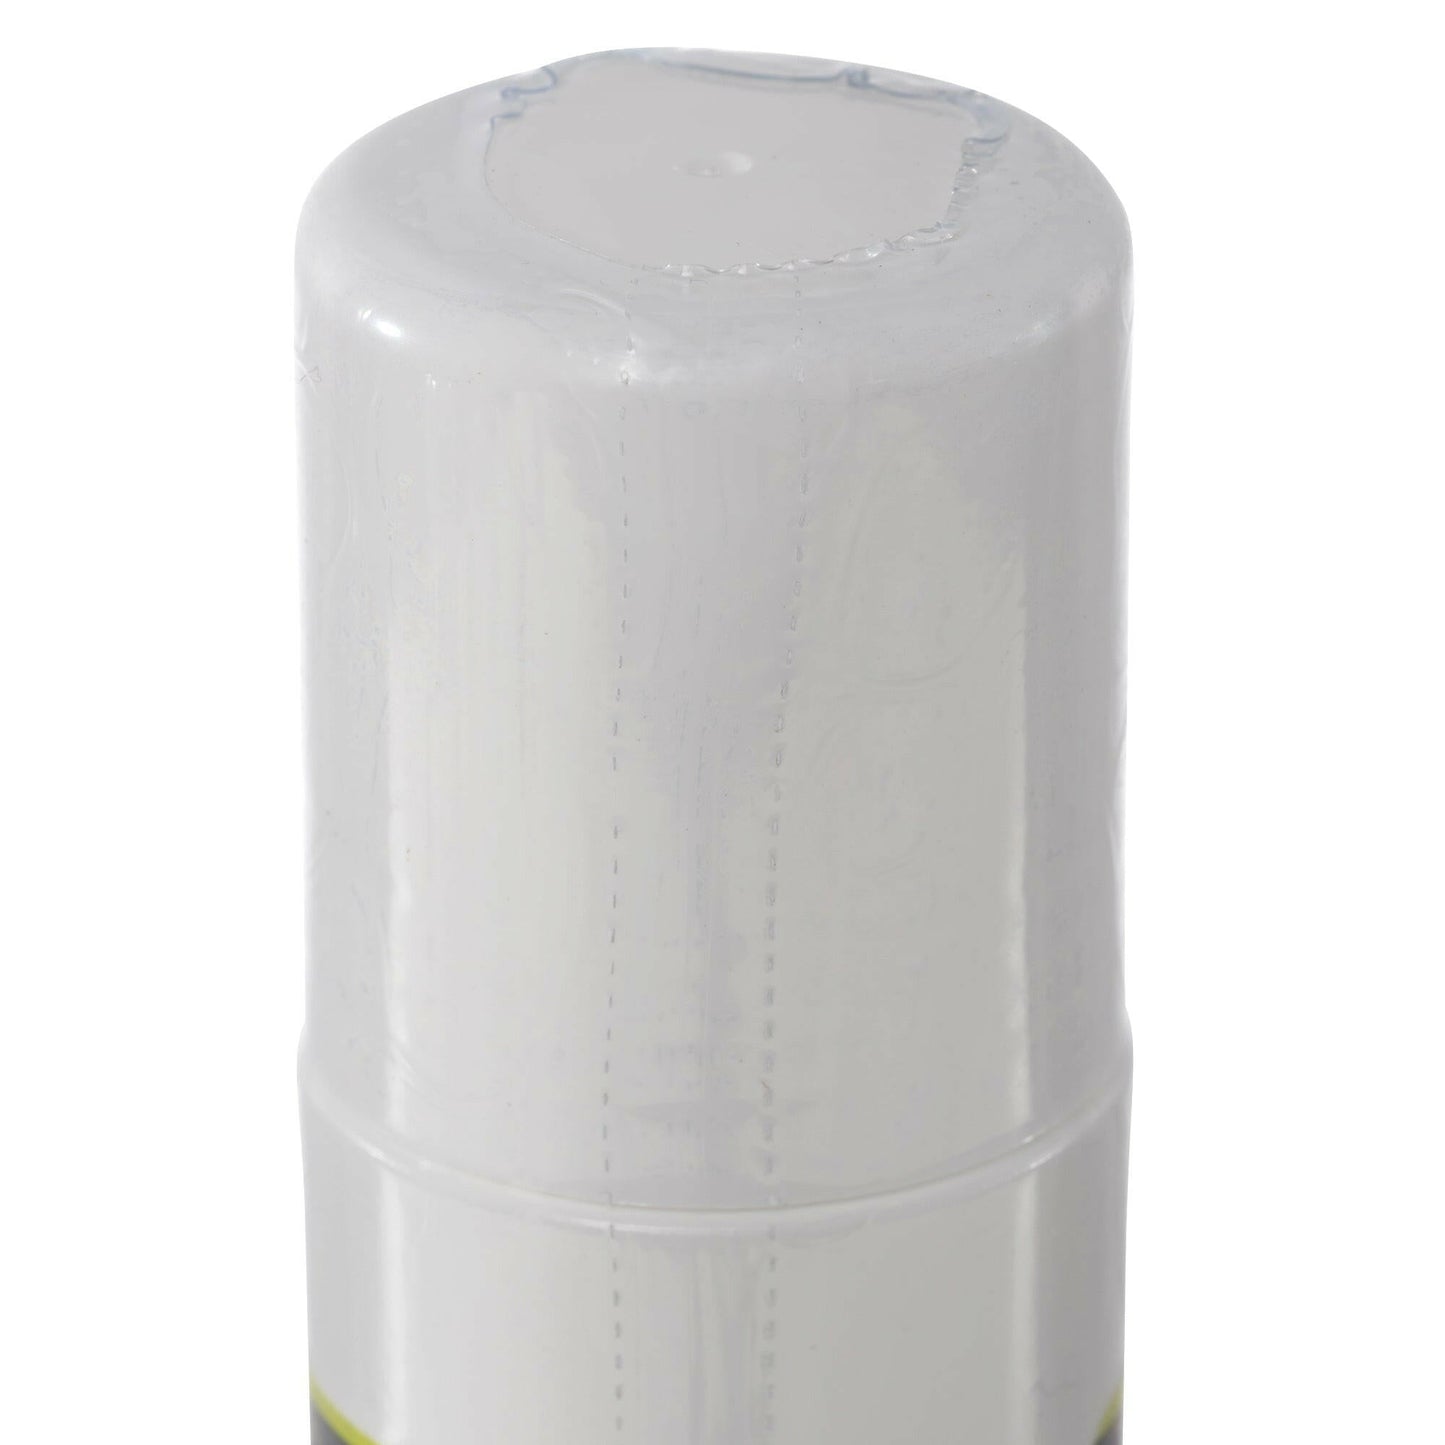 DMSO 70/30 3 oz. Aloe Vera Roll-on Super Biologic 99.995% Low Odor Pharma Grade in BPA Free Plastic